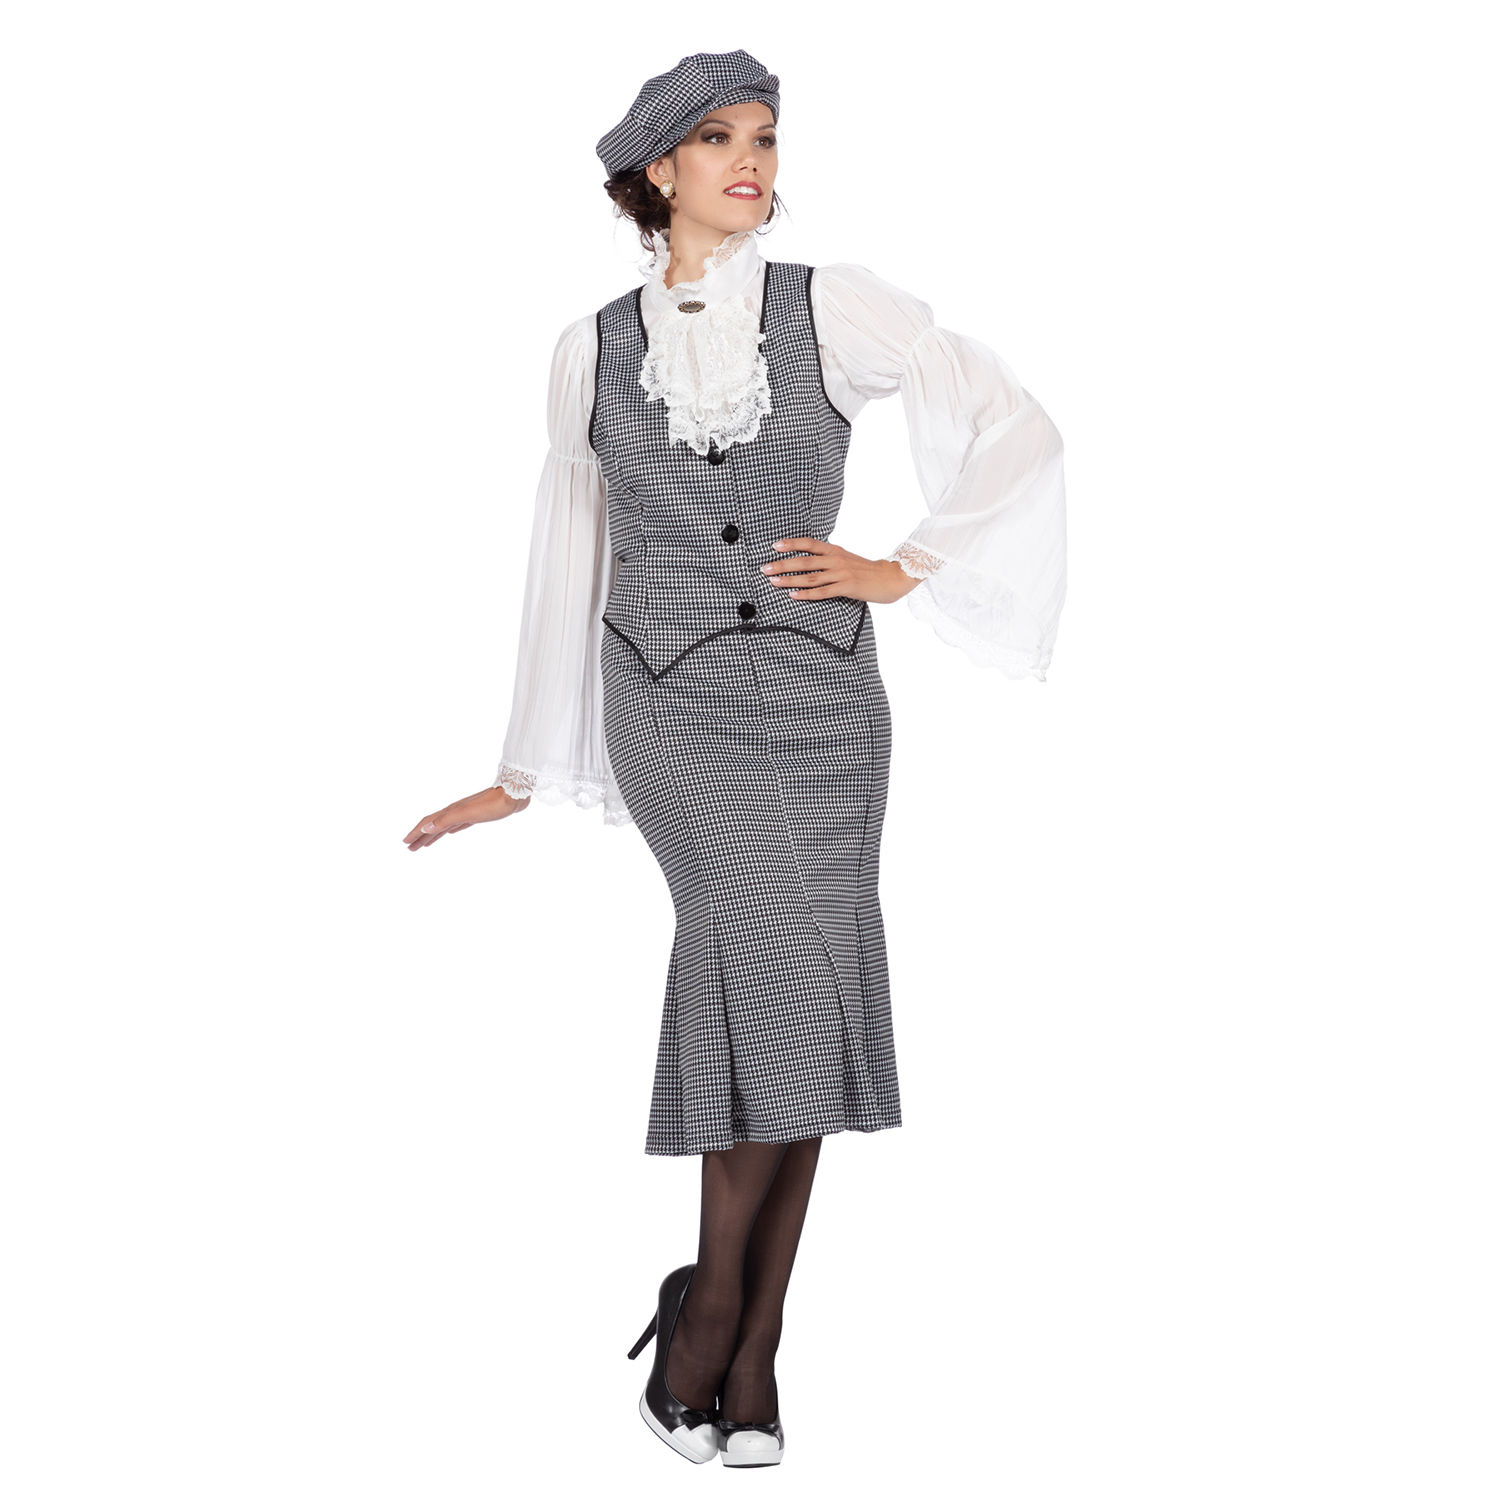 SALE Damen-Kostüm 20er Jahre Polly, 3-teilig mit Mütze, Weste & Rock, Gr. 34